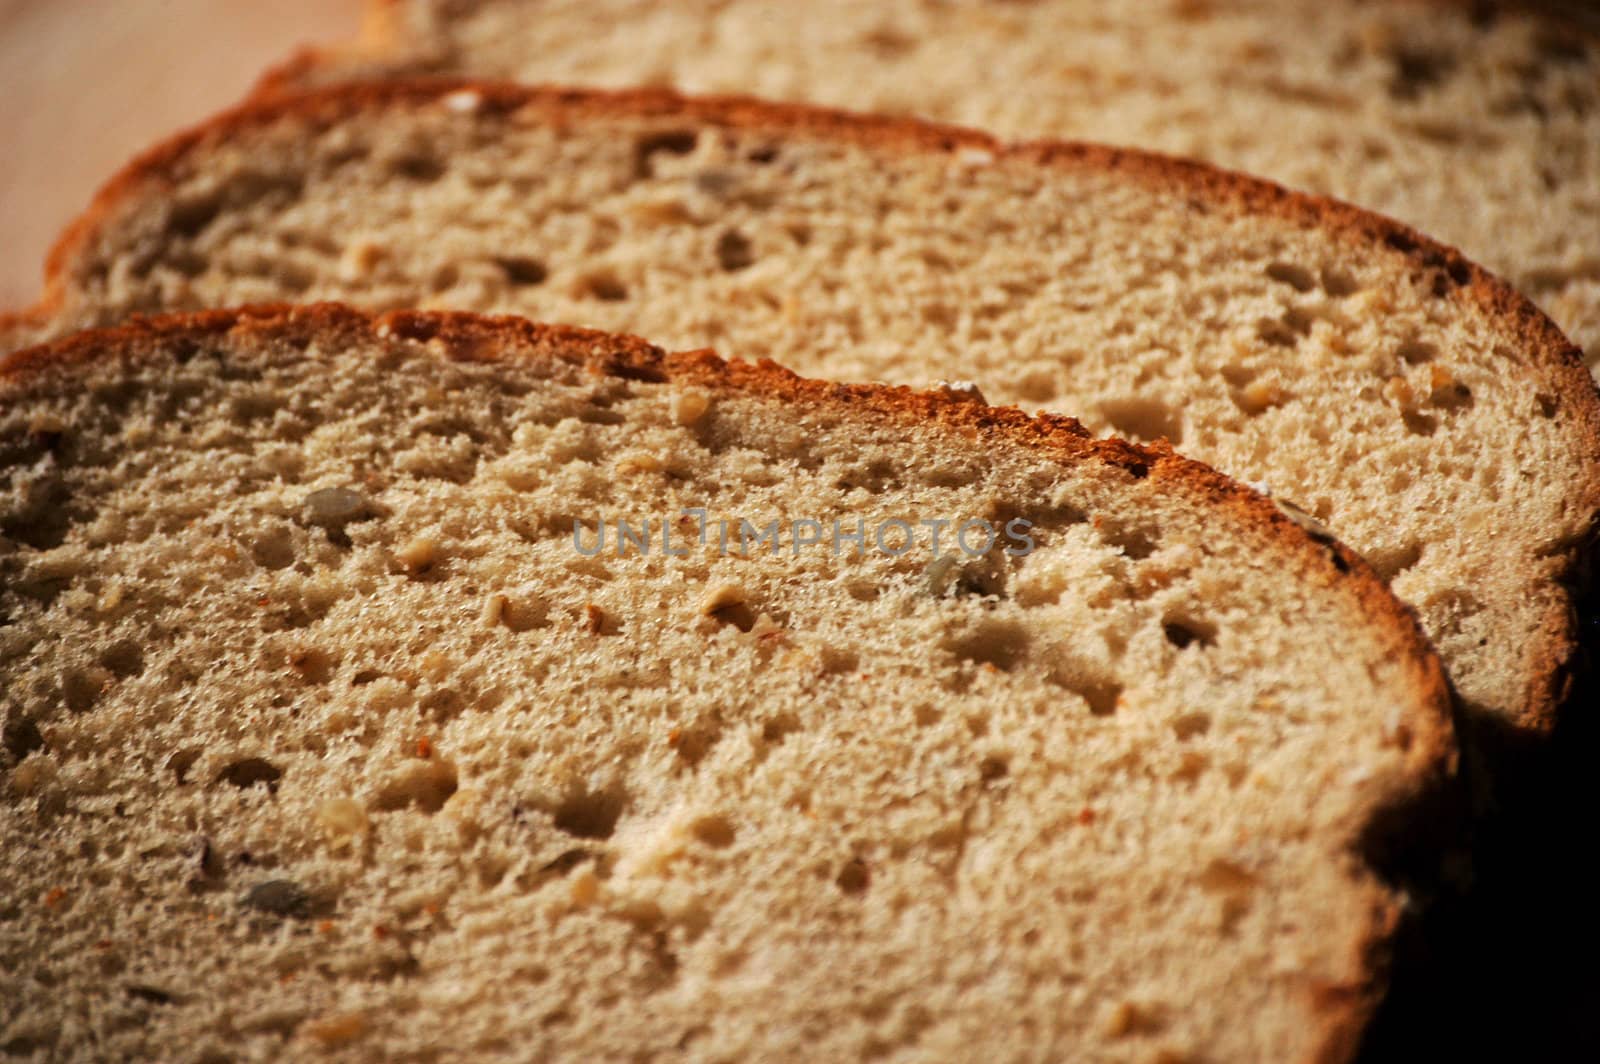 Wheat bread shown up close